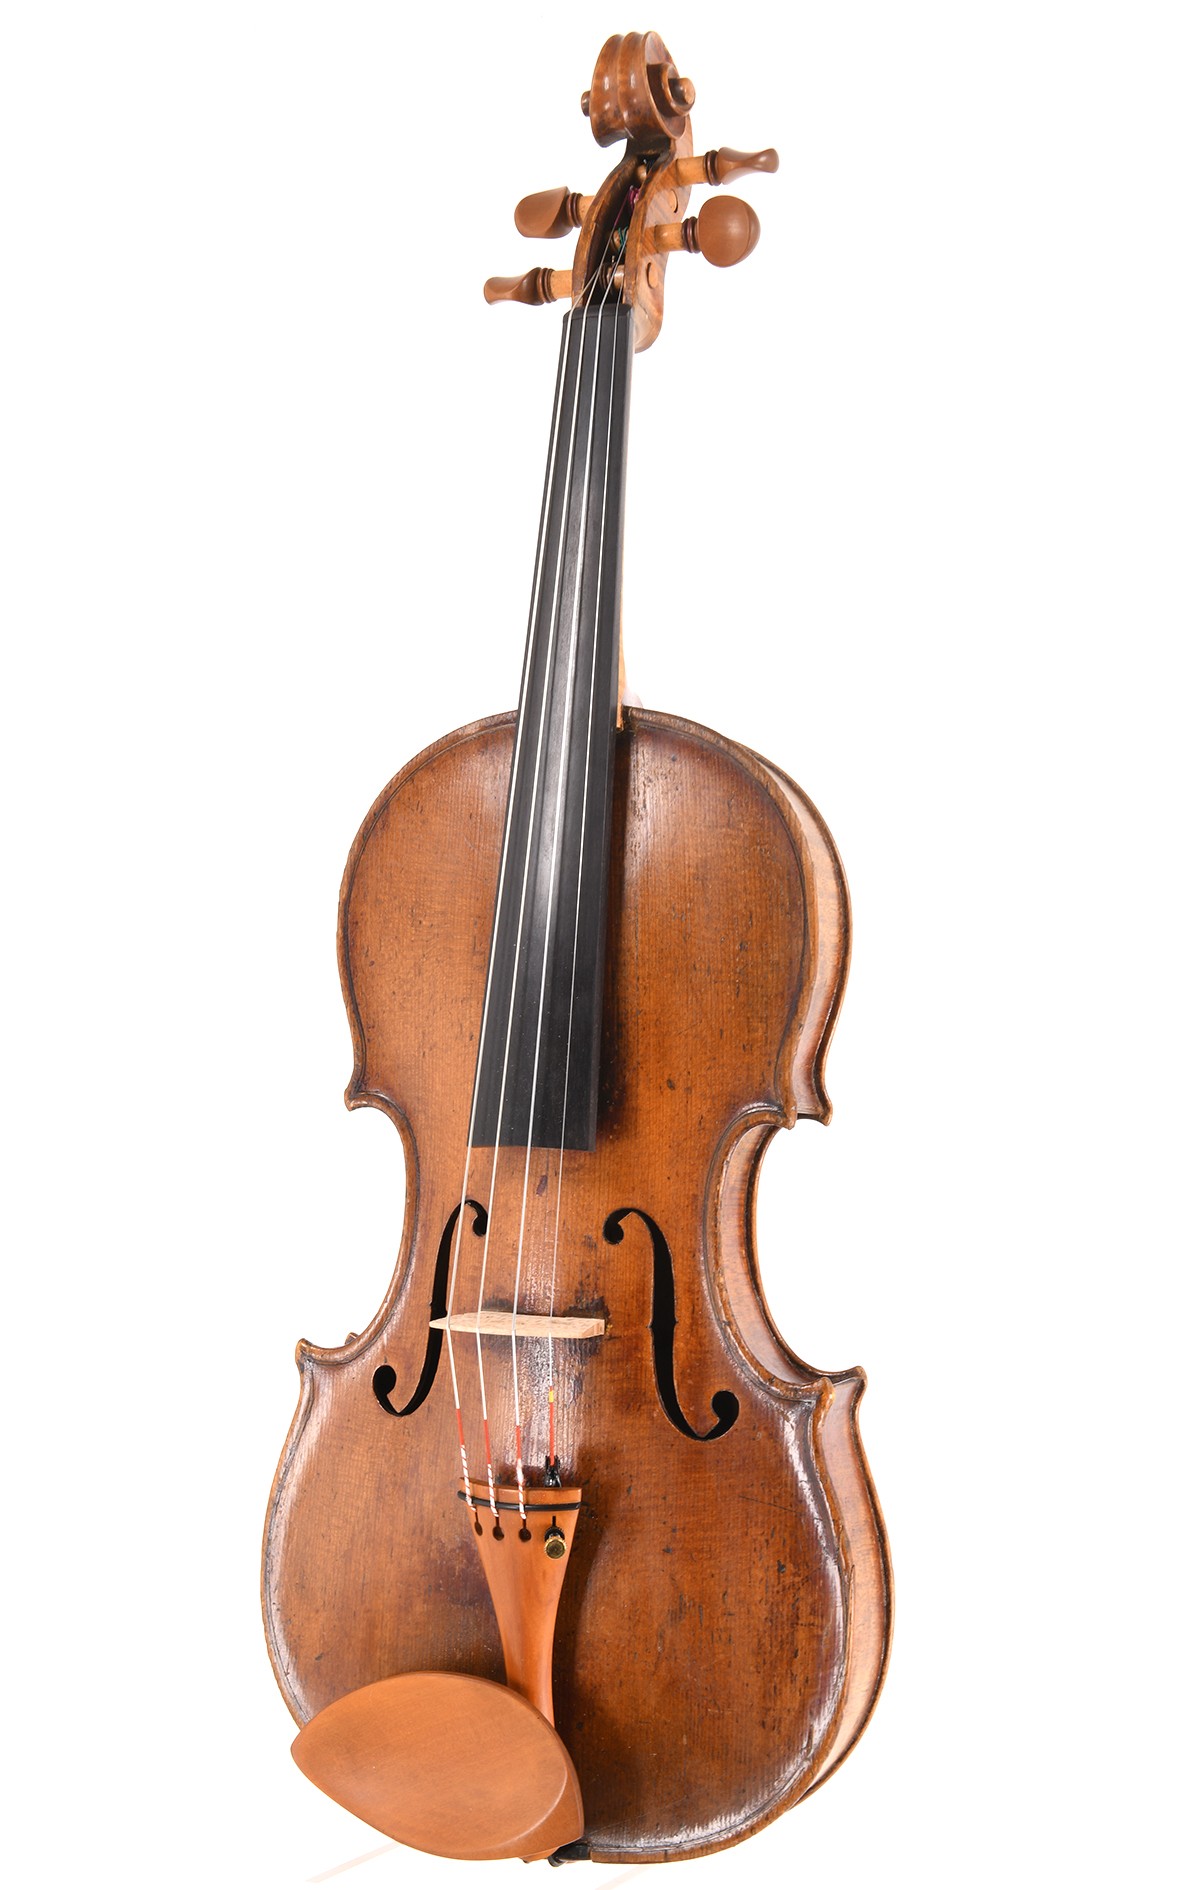 Intéressant violon de maître français vers 1840 (certificat J.-J. Rampal)